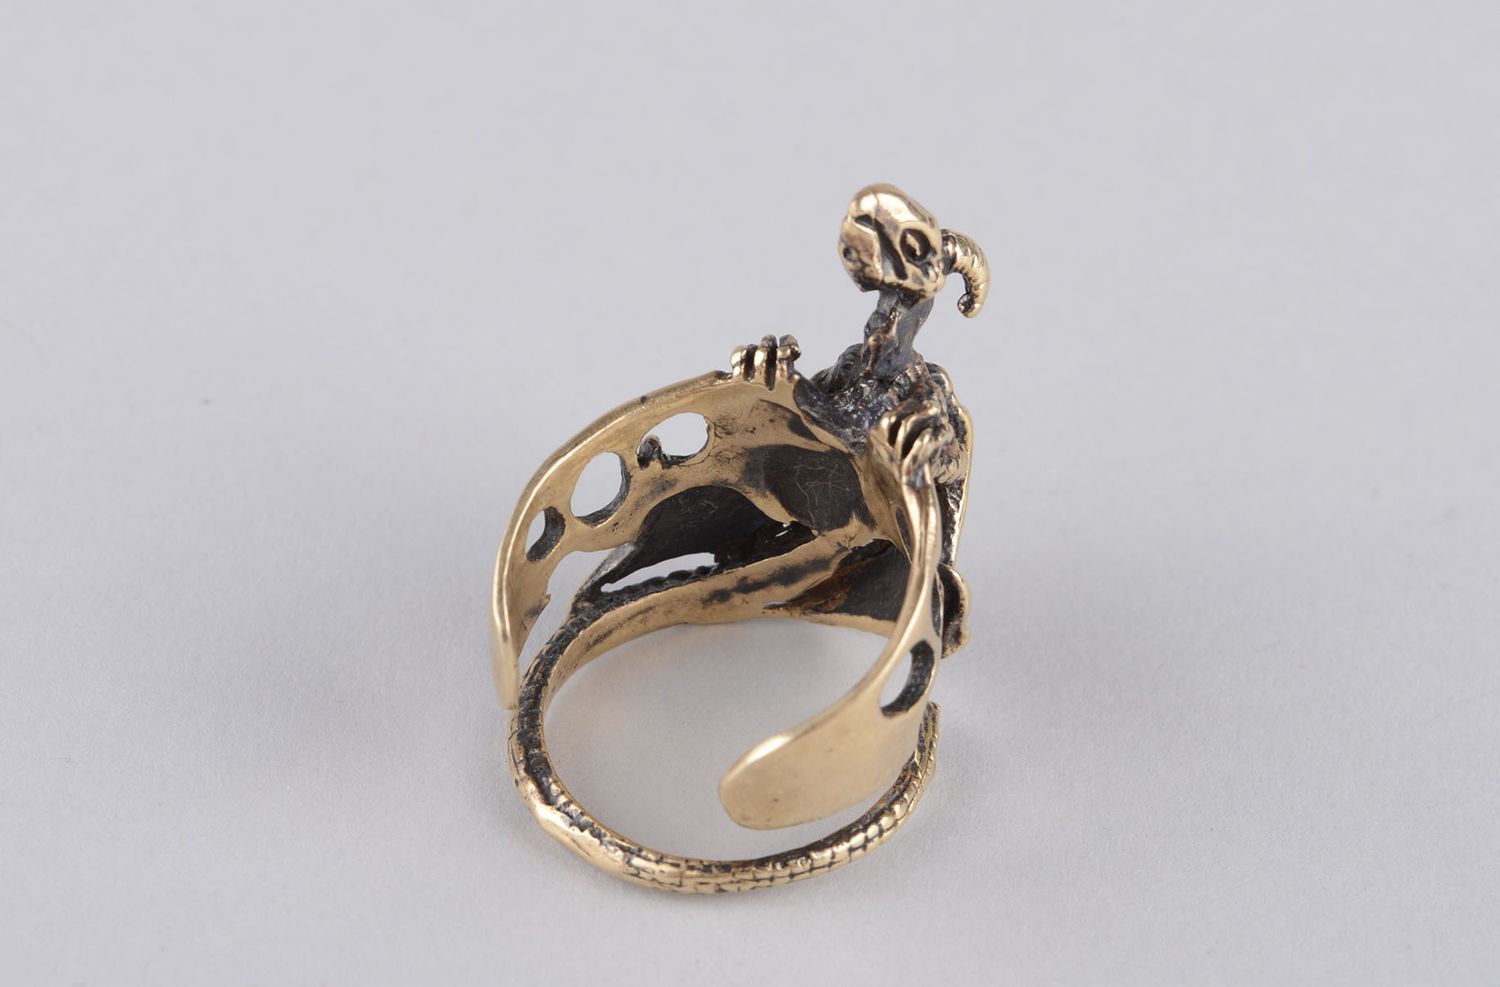 Handmade bronze jewelry bronze ring for men dragon ring handmade jewelry photo 8